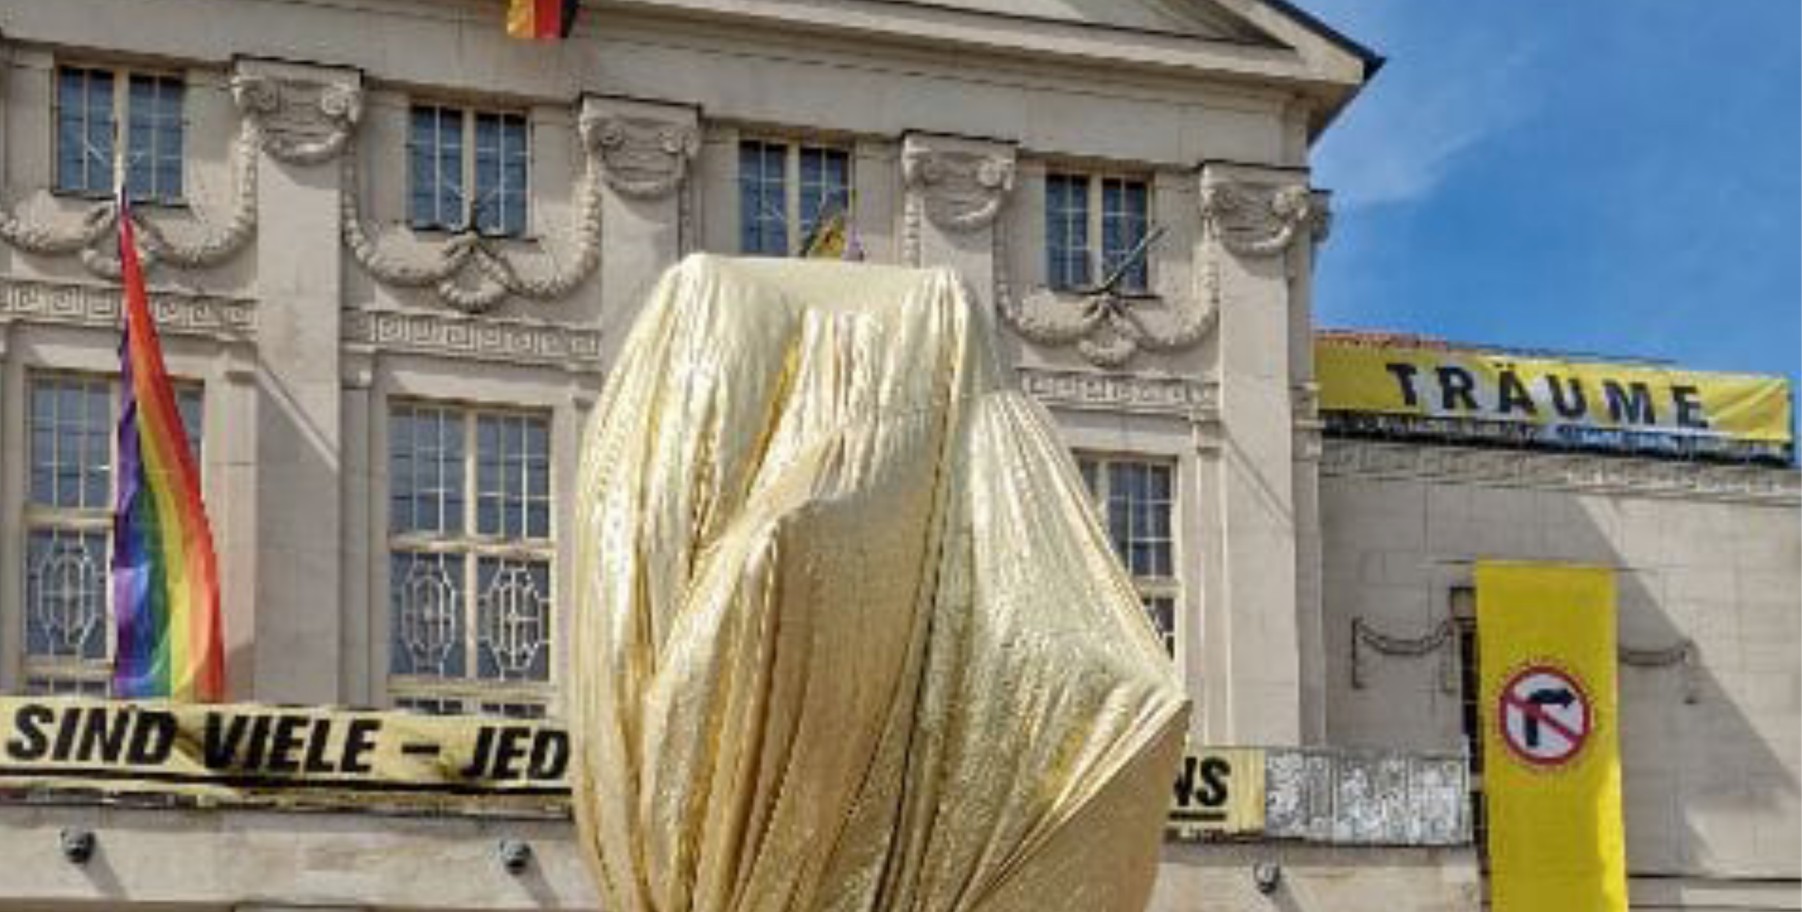 Protest: Das Goethe-Schiller-Denkmal in Weimar wurde am 8. Mai golden verhüllt. Auch das Staatstheater trägt Gold und Regenbogen. (Foto: Weimarer Bürgerbündnis)